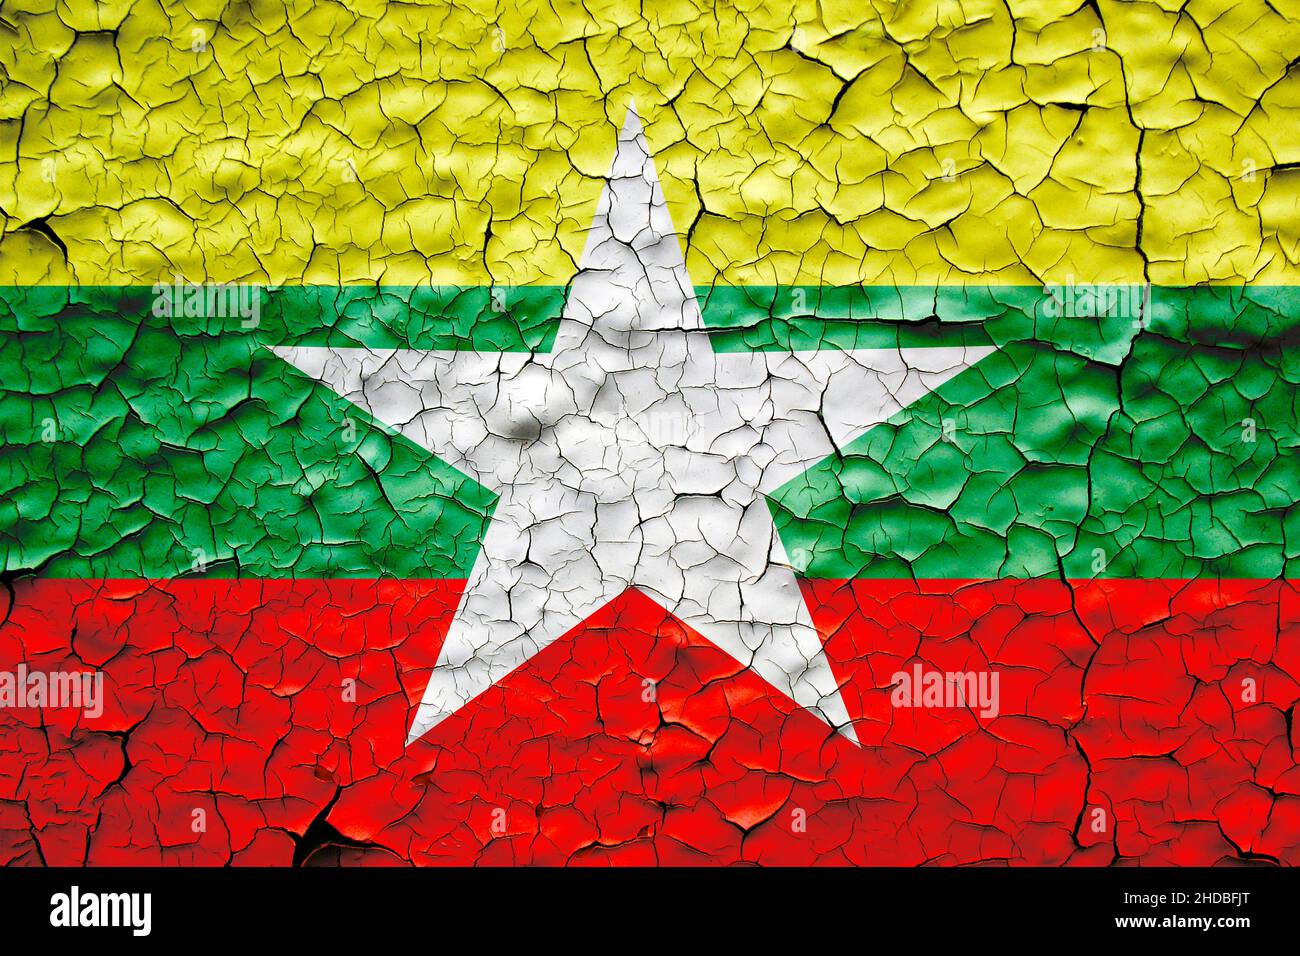 Myanmar Flagge über rissige Betonwand gemalt. Abbildung des Konzeptes zum Zusammenbruch der Regierung von Myanmar Stockfoto